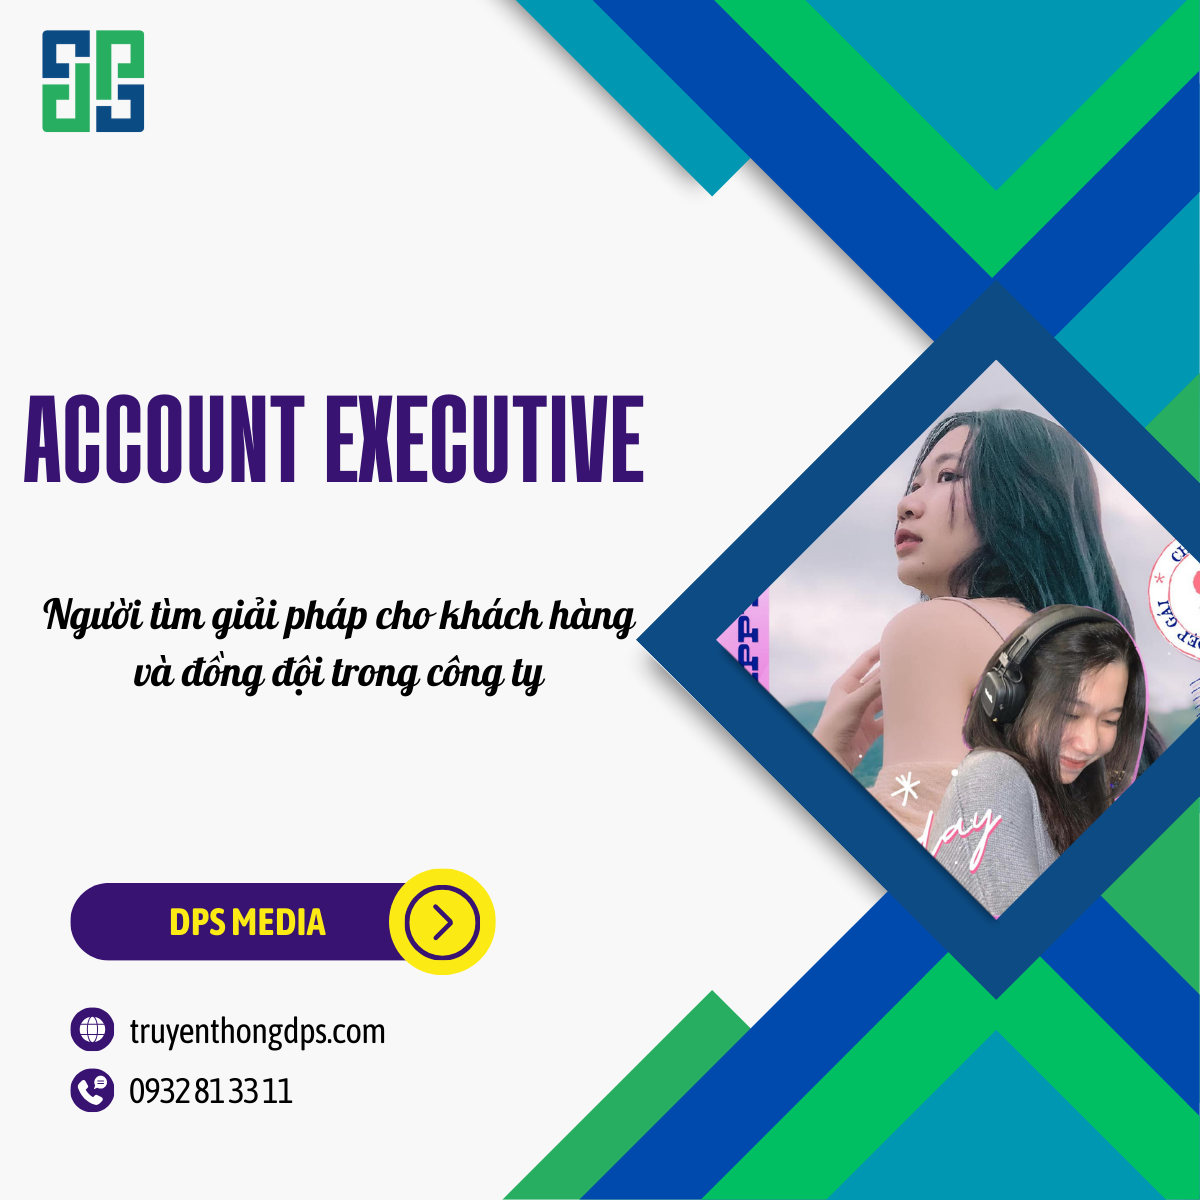 Nhà cung cấp giải pháp cho khách hàng gọi tên Account Executive